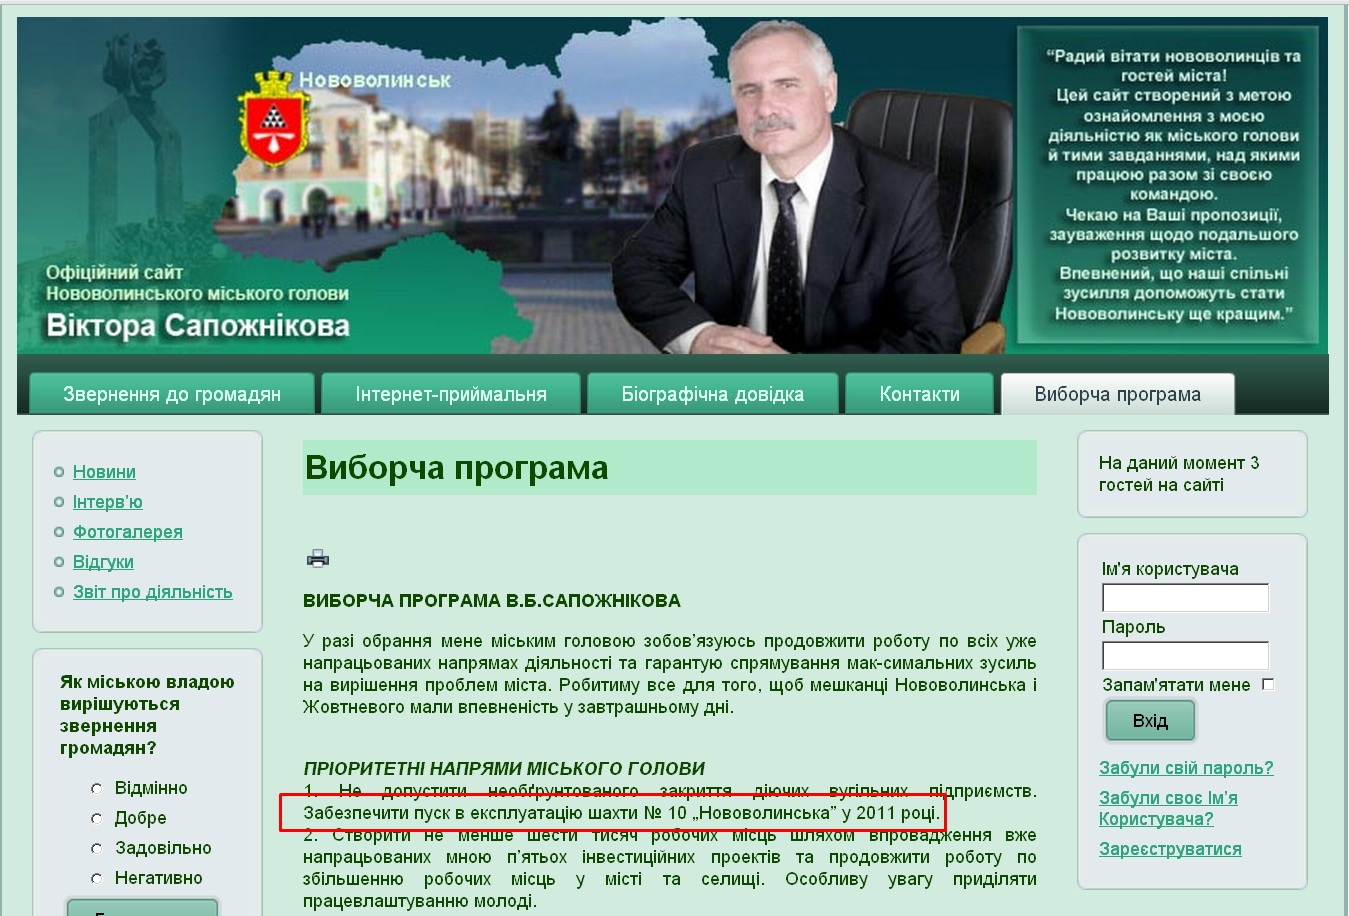 http://sapozhnikov.com.ua/index.php/2010-05-18-08-34-18